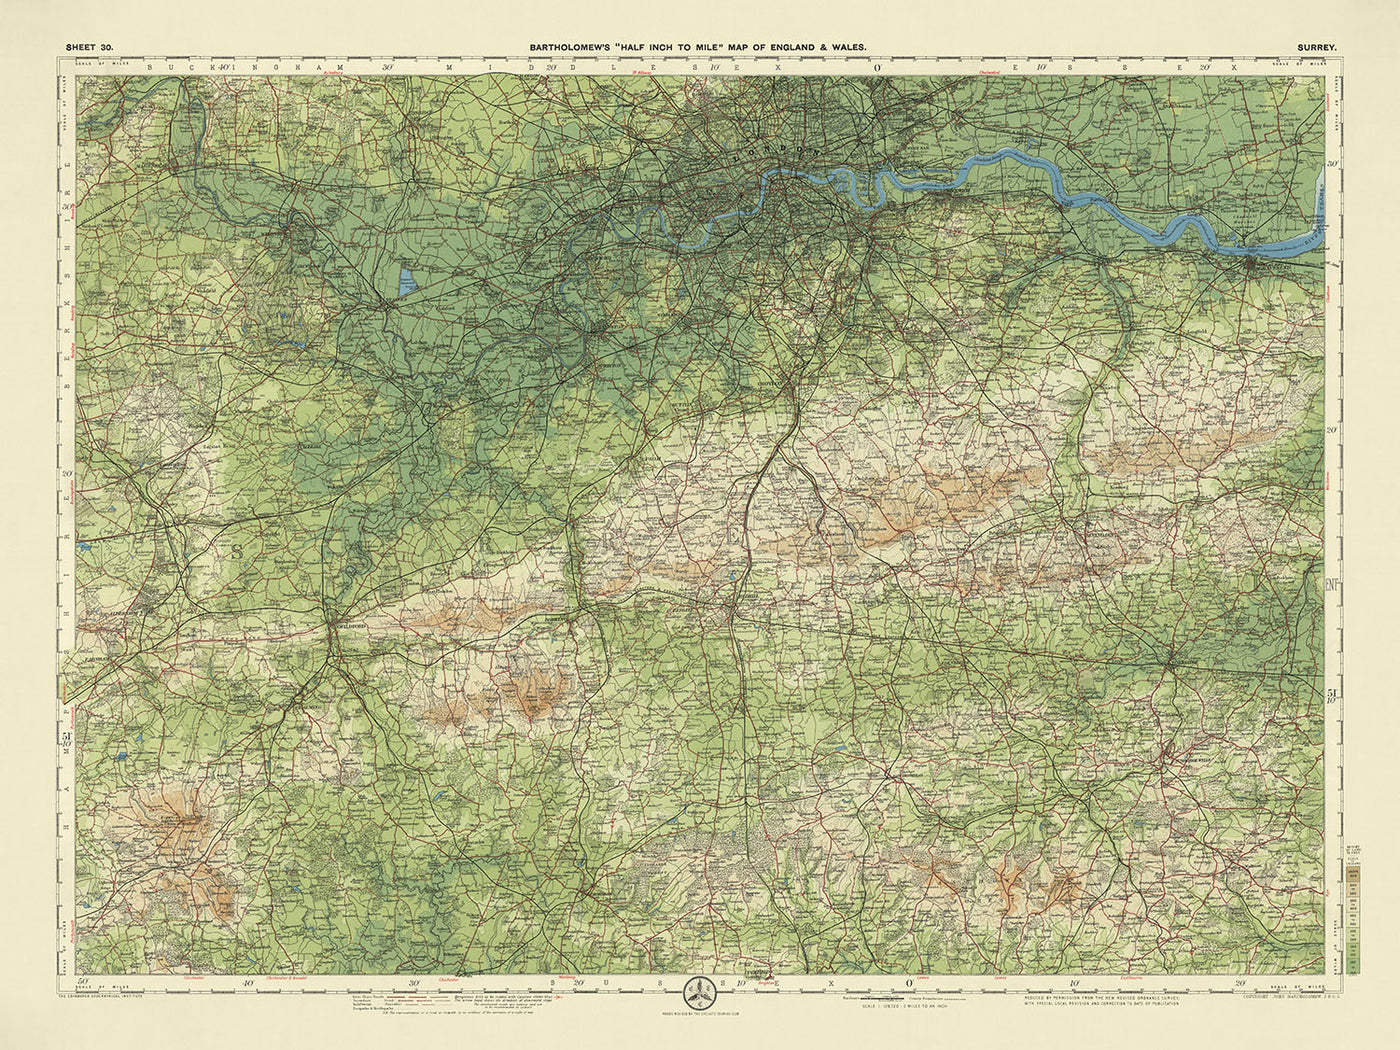 Antiguo mapa OS de Surrey por Bartholomew, 1901: Londres, Támesis, Castillo de Windsor, Richmond Park, North Downs, Epsom